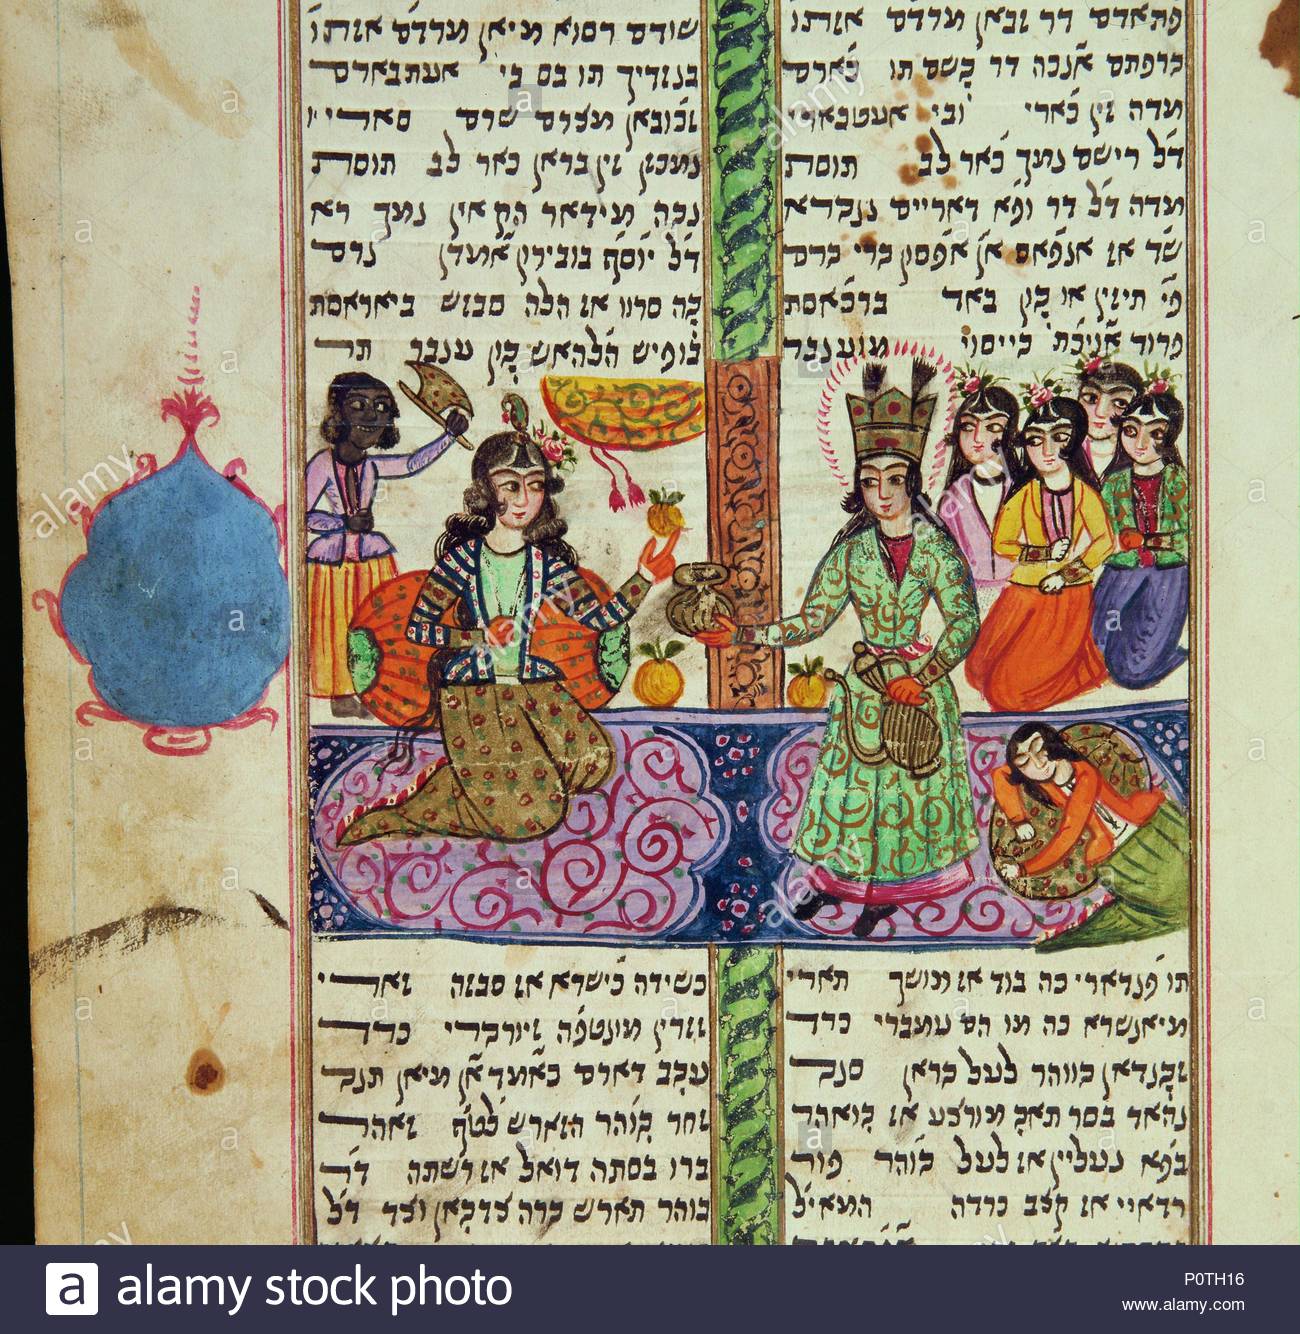 la-reine-esther-supplie-roi-ahasver-de-clemence-envers-les-juifs-de-perse-page-dun-meguilat-esther-le-livre-biblique-desther-lu-lors-de-la-fete-de-pourim-manuscrit-persan-judeo-persian-ecrit-en-cara